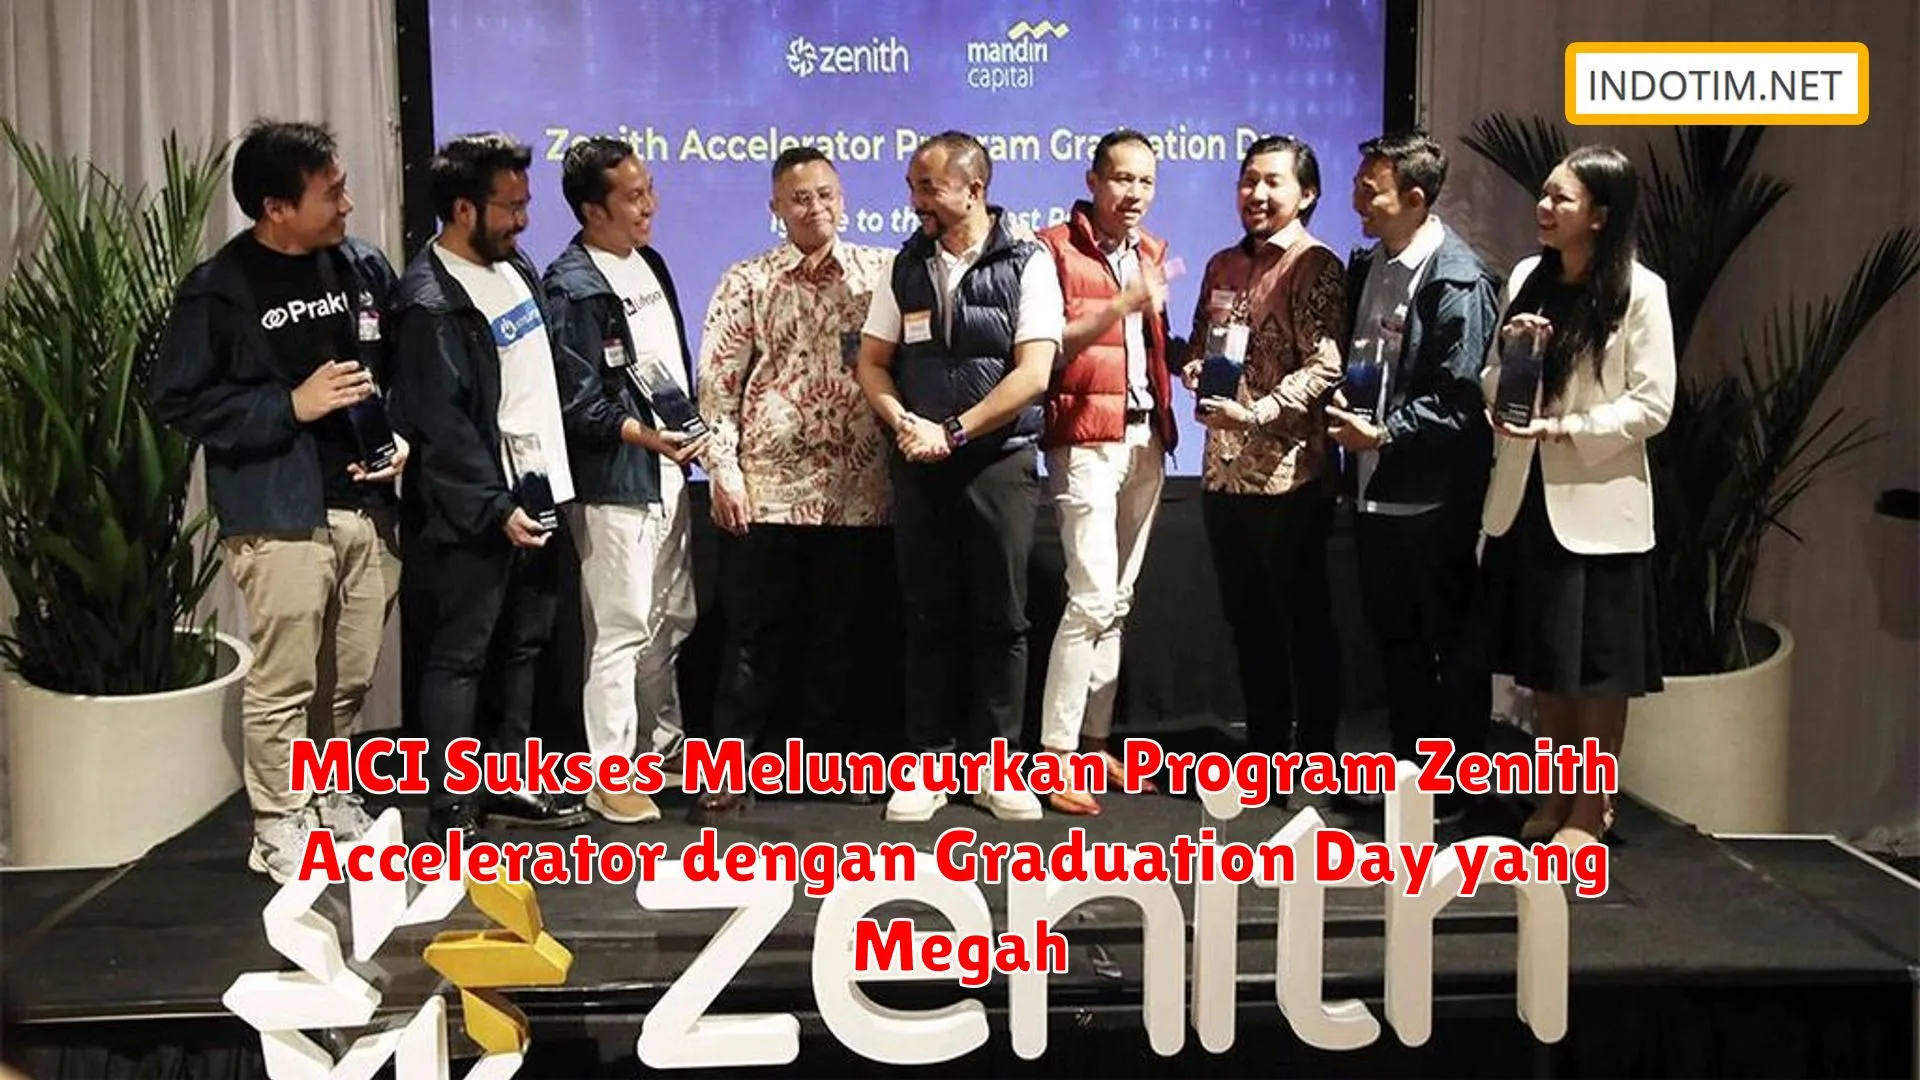 MCI Sukses Meluncurkan Program Zenith Accelerator dengan Graduation Day yang Megah